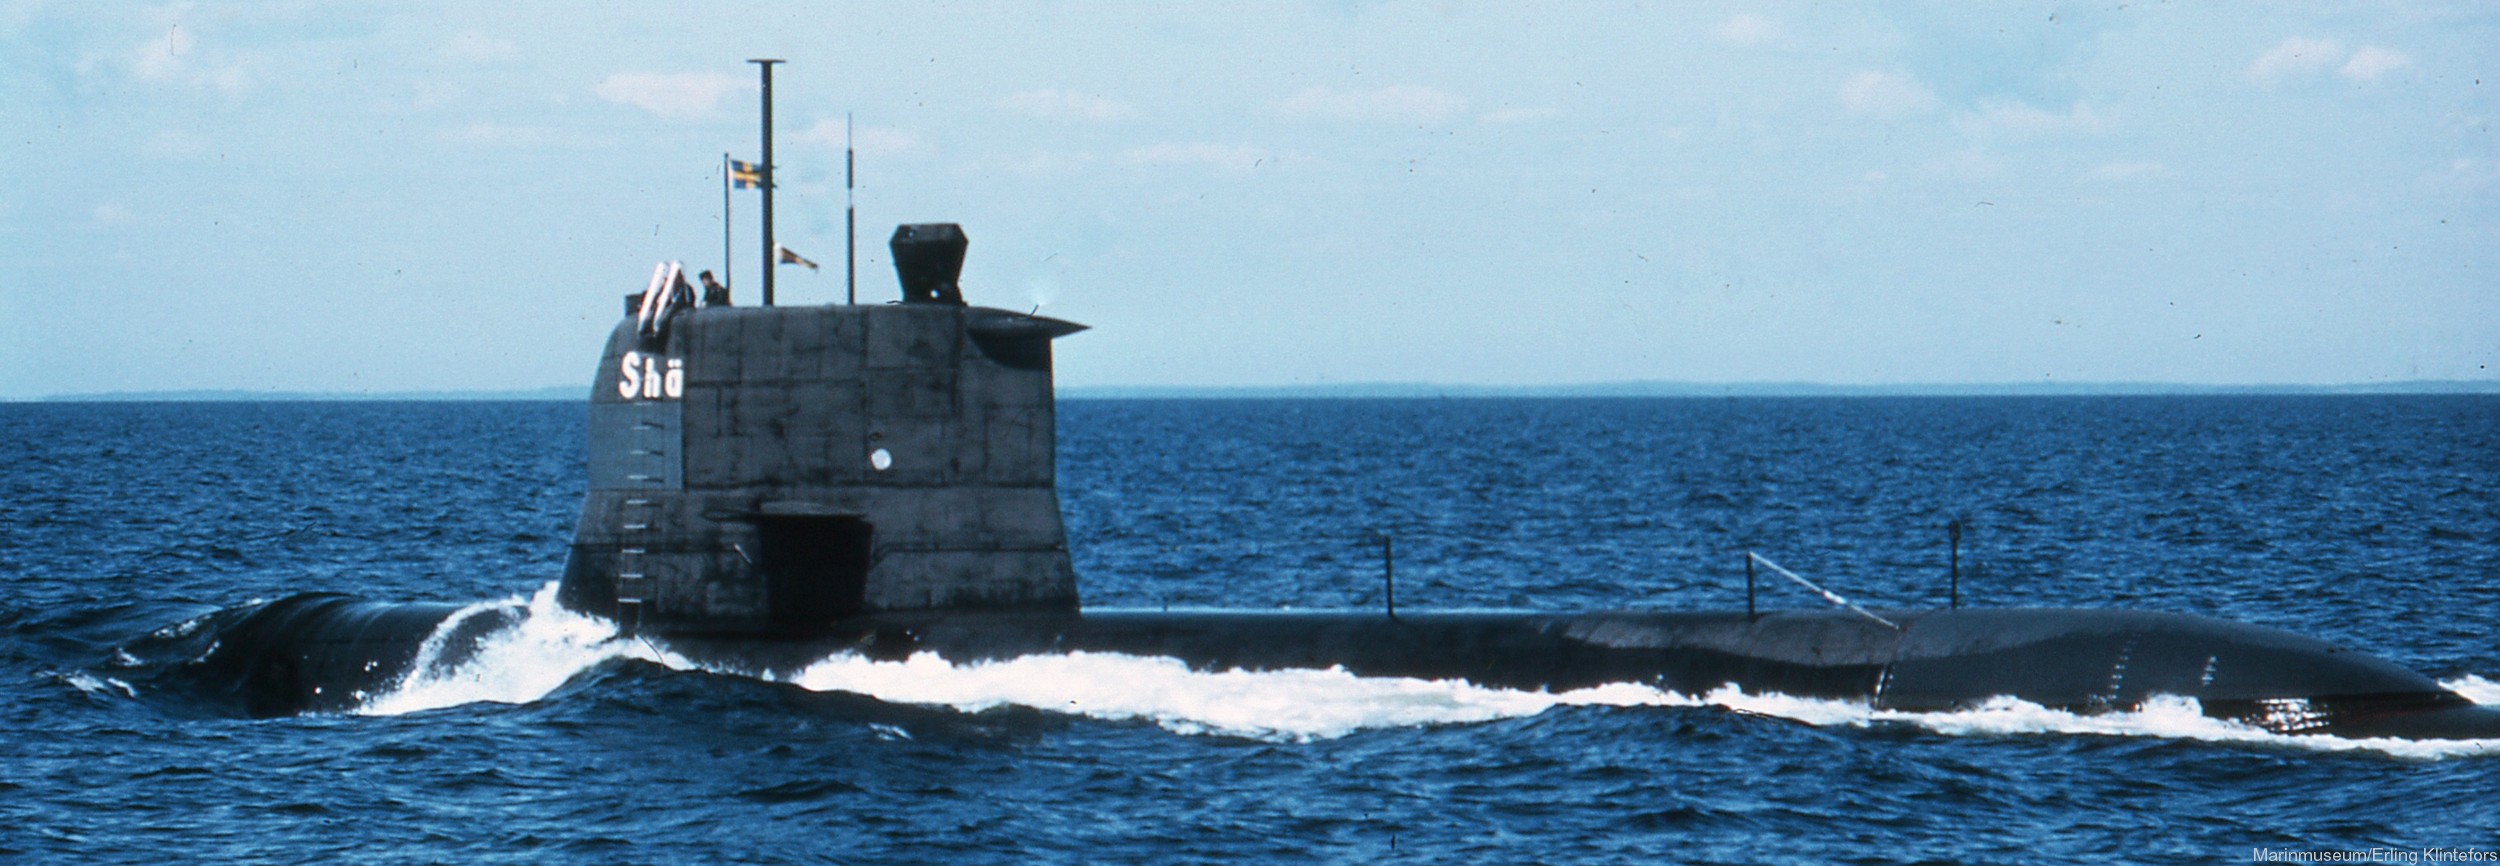 hswms hms sjöhästen shä sjöormen a11 class submarine ssk swedish navy svenska marinen försvarsmakten 18